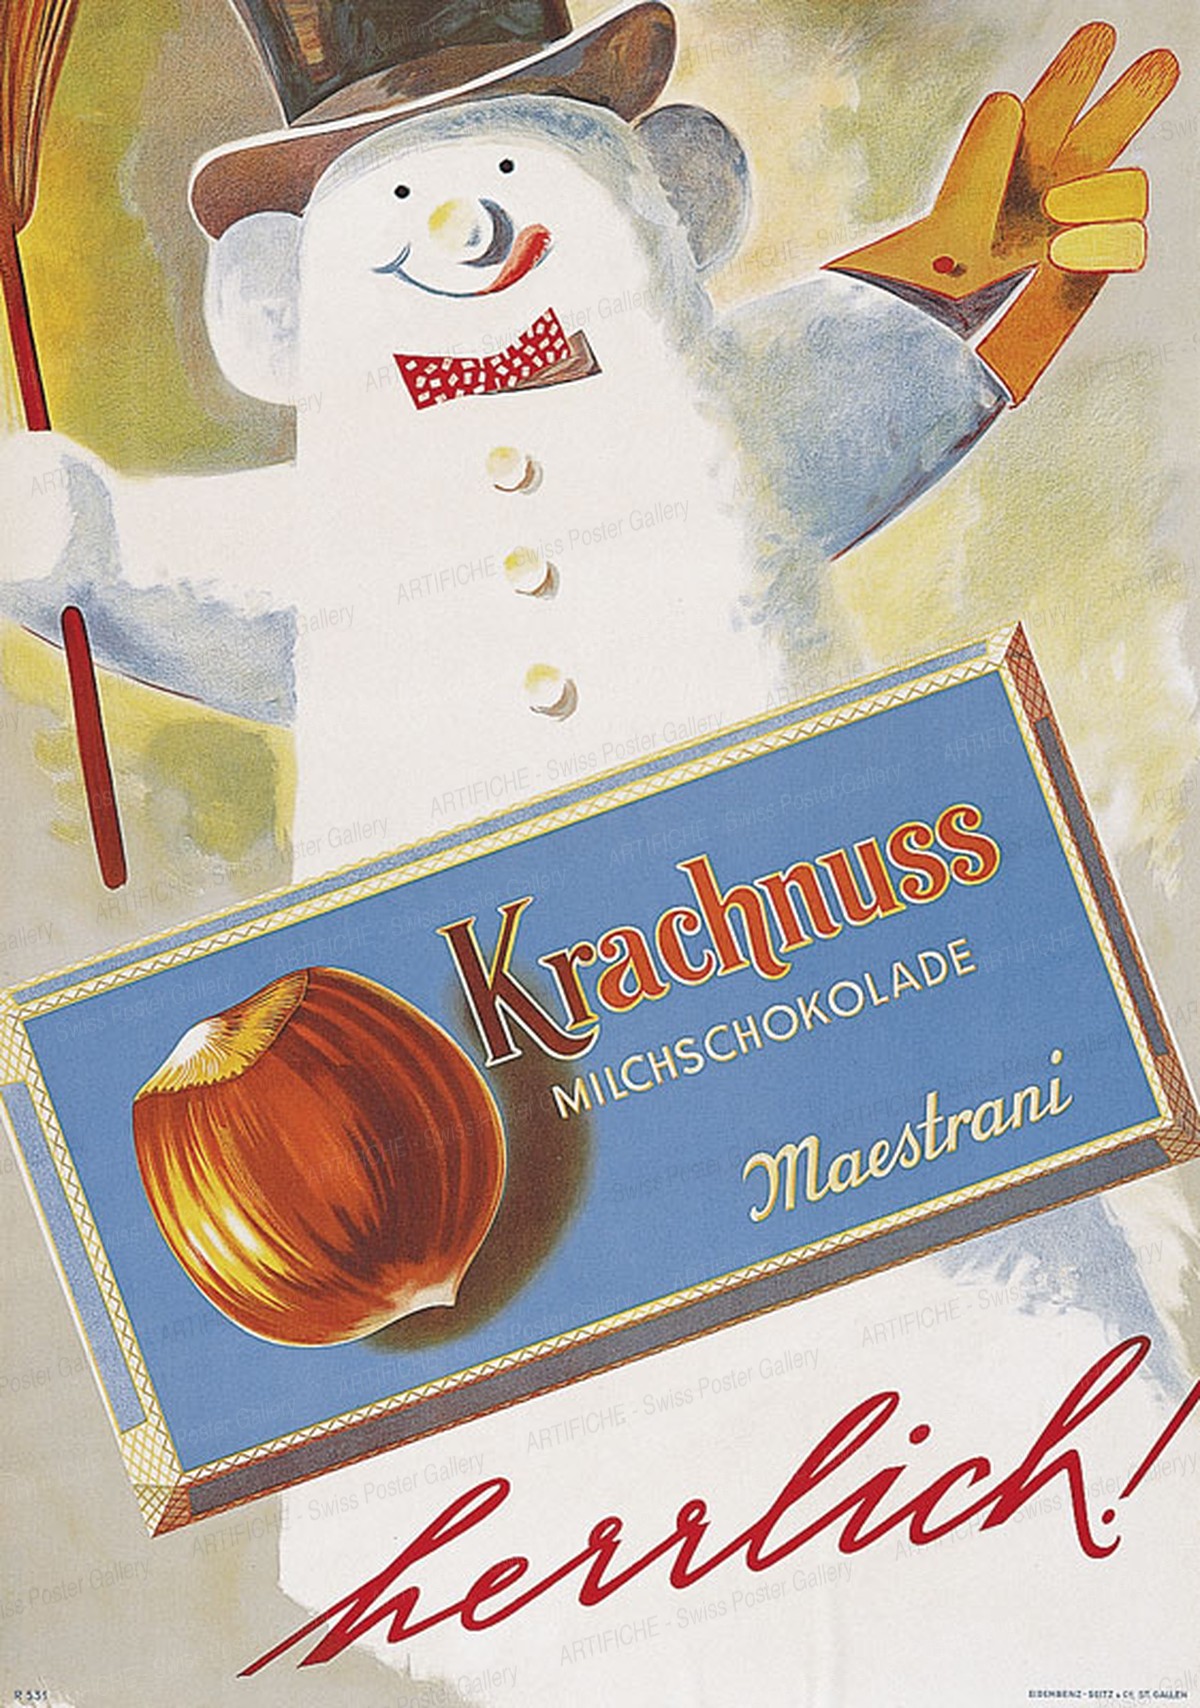 Krachnuss Milchschokolade Maestrani – herrlich!, Artist unknown